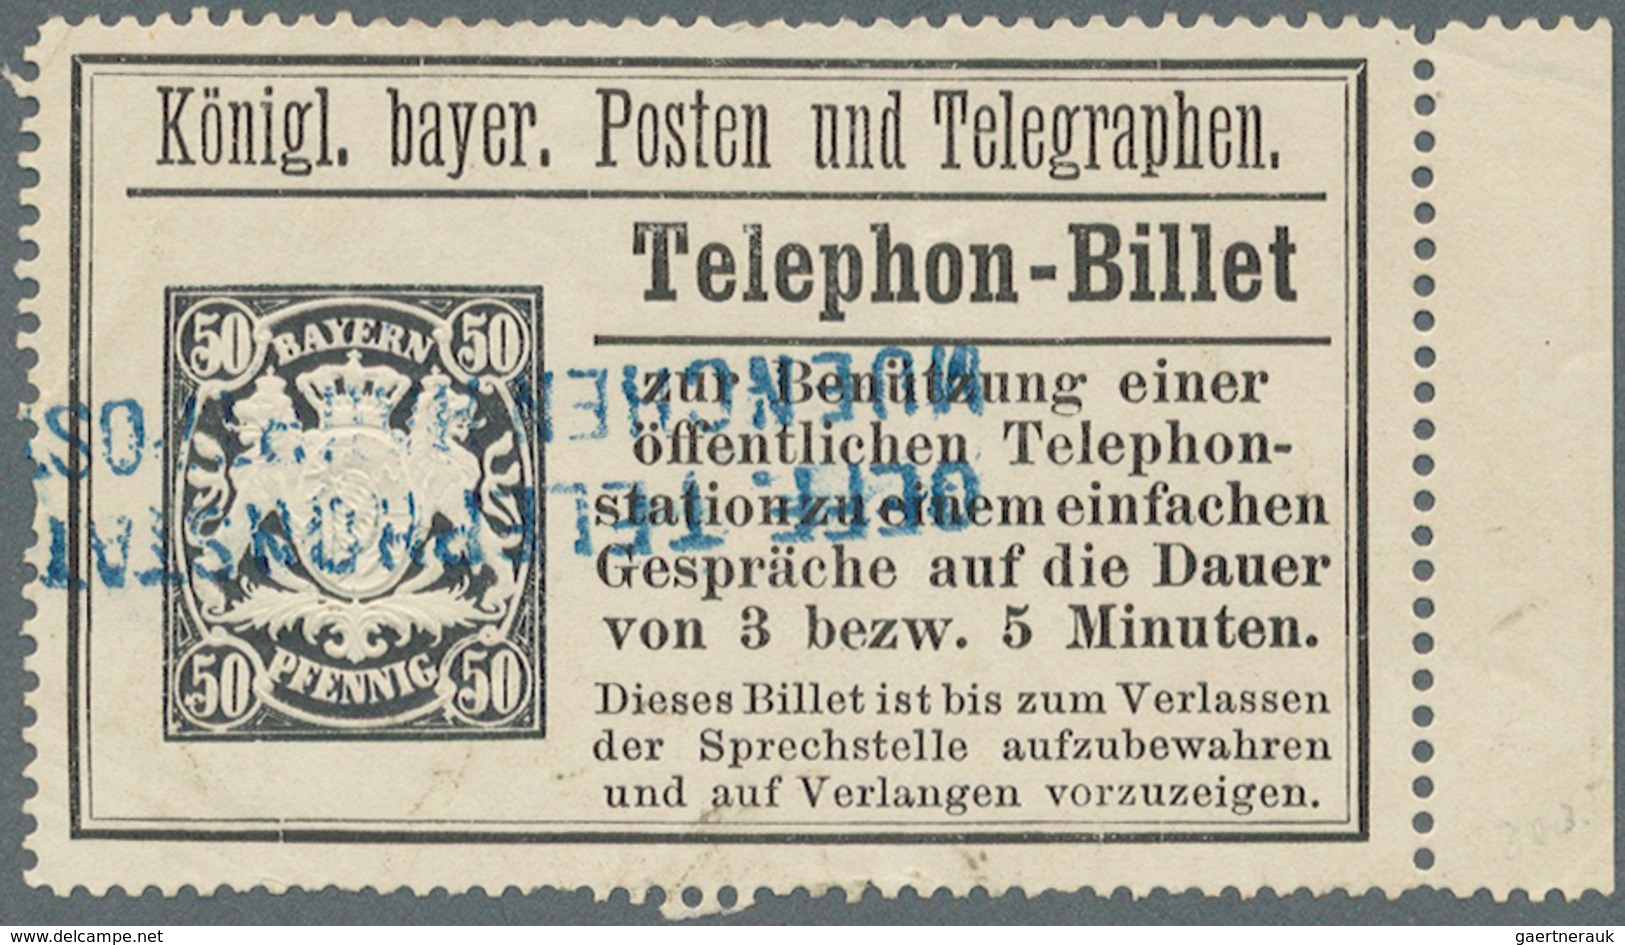 Bayern - Marken und Briefe: 1880/1910, Wappen Pfennigzeit, 70 Belege mit immer wieder auch interessa